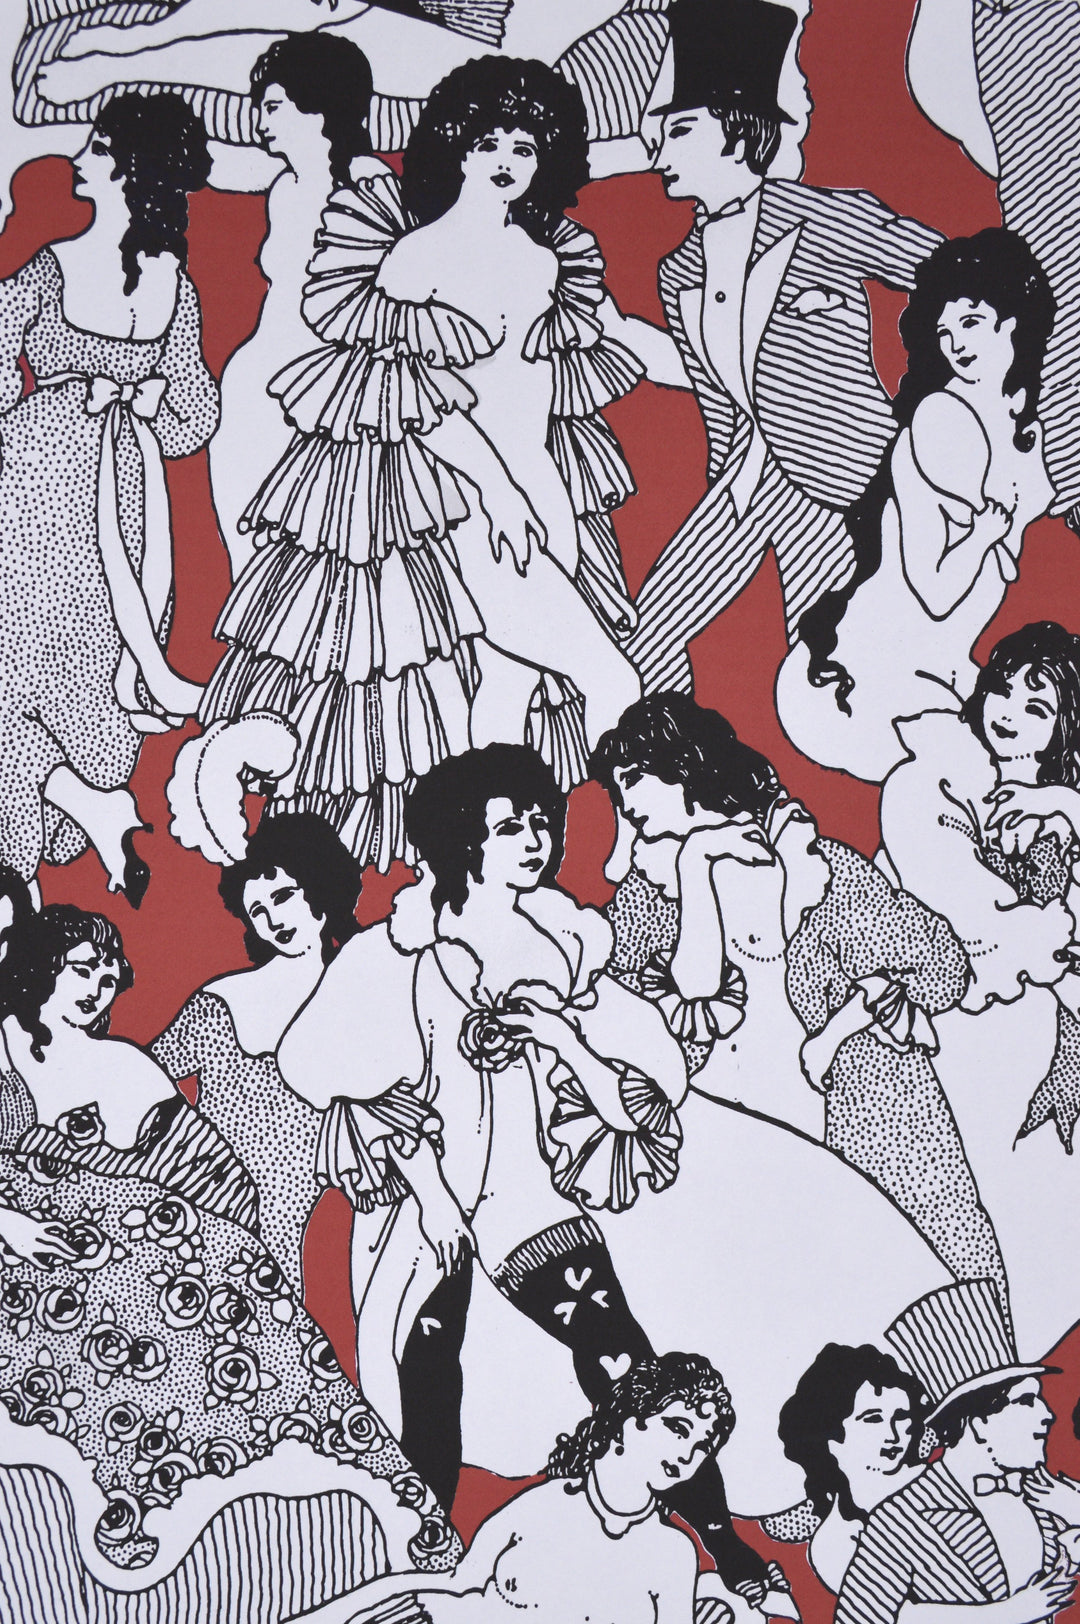 boudoir-ny-wallpaper-red-retro-men-women-black-white-drawings